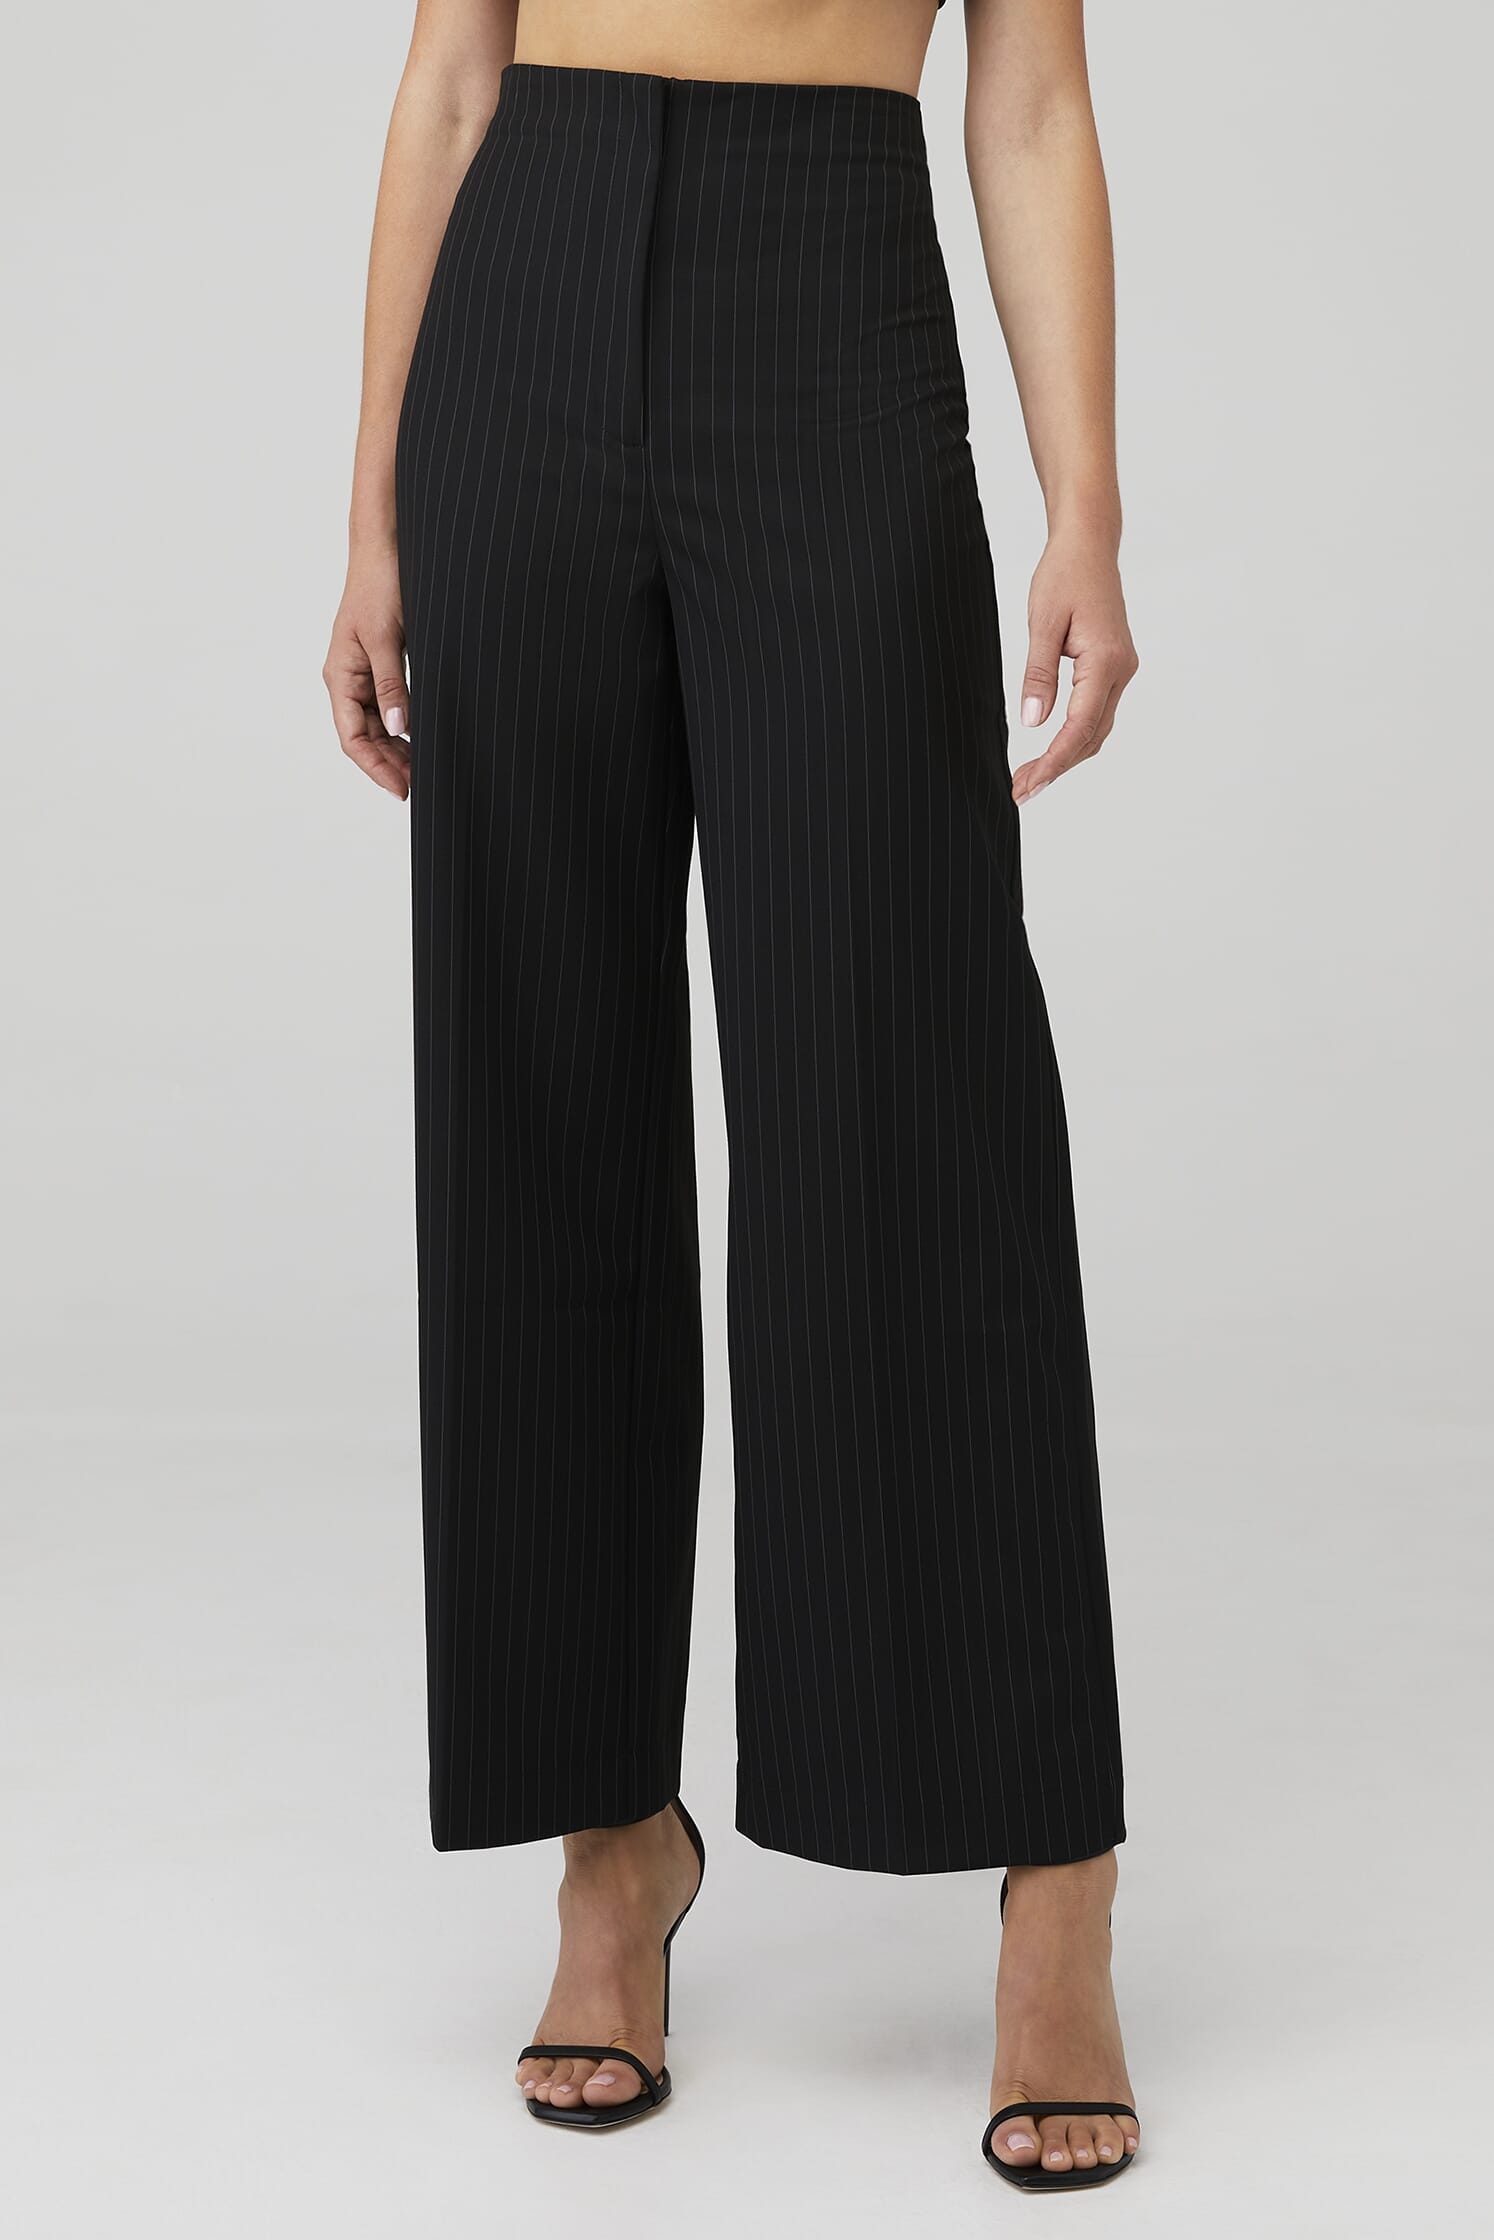 Bardot | Pin Stripe Wide Leg Pant in Black & White| FashionPass